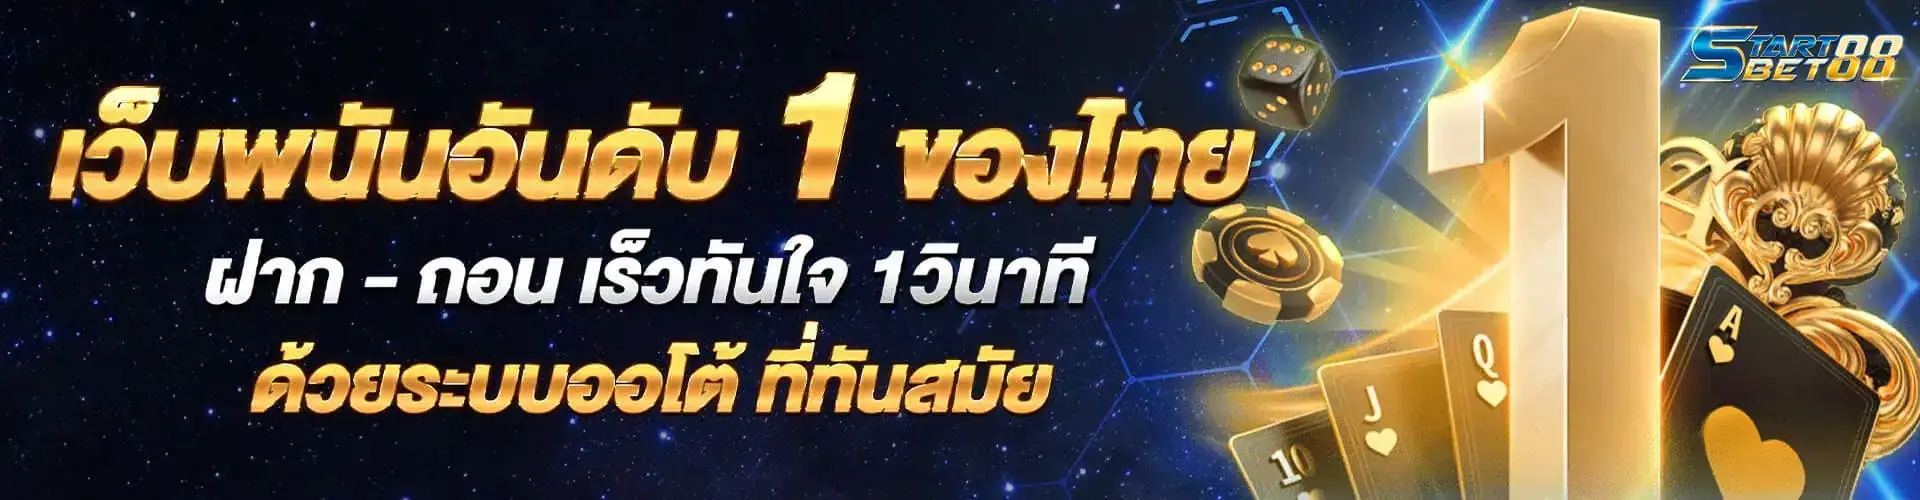 เว็บพนันอันดับ 1 ของไทย